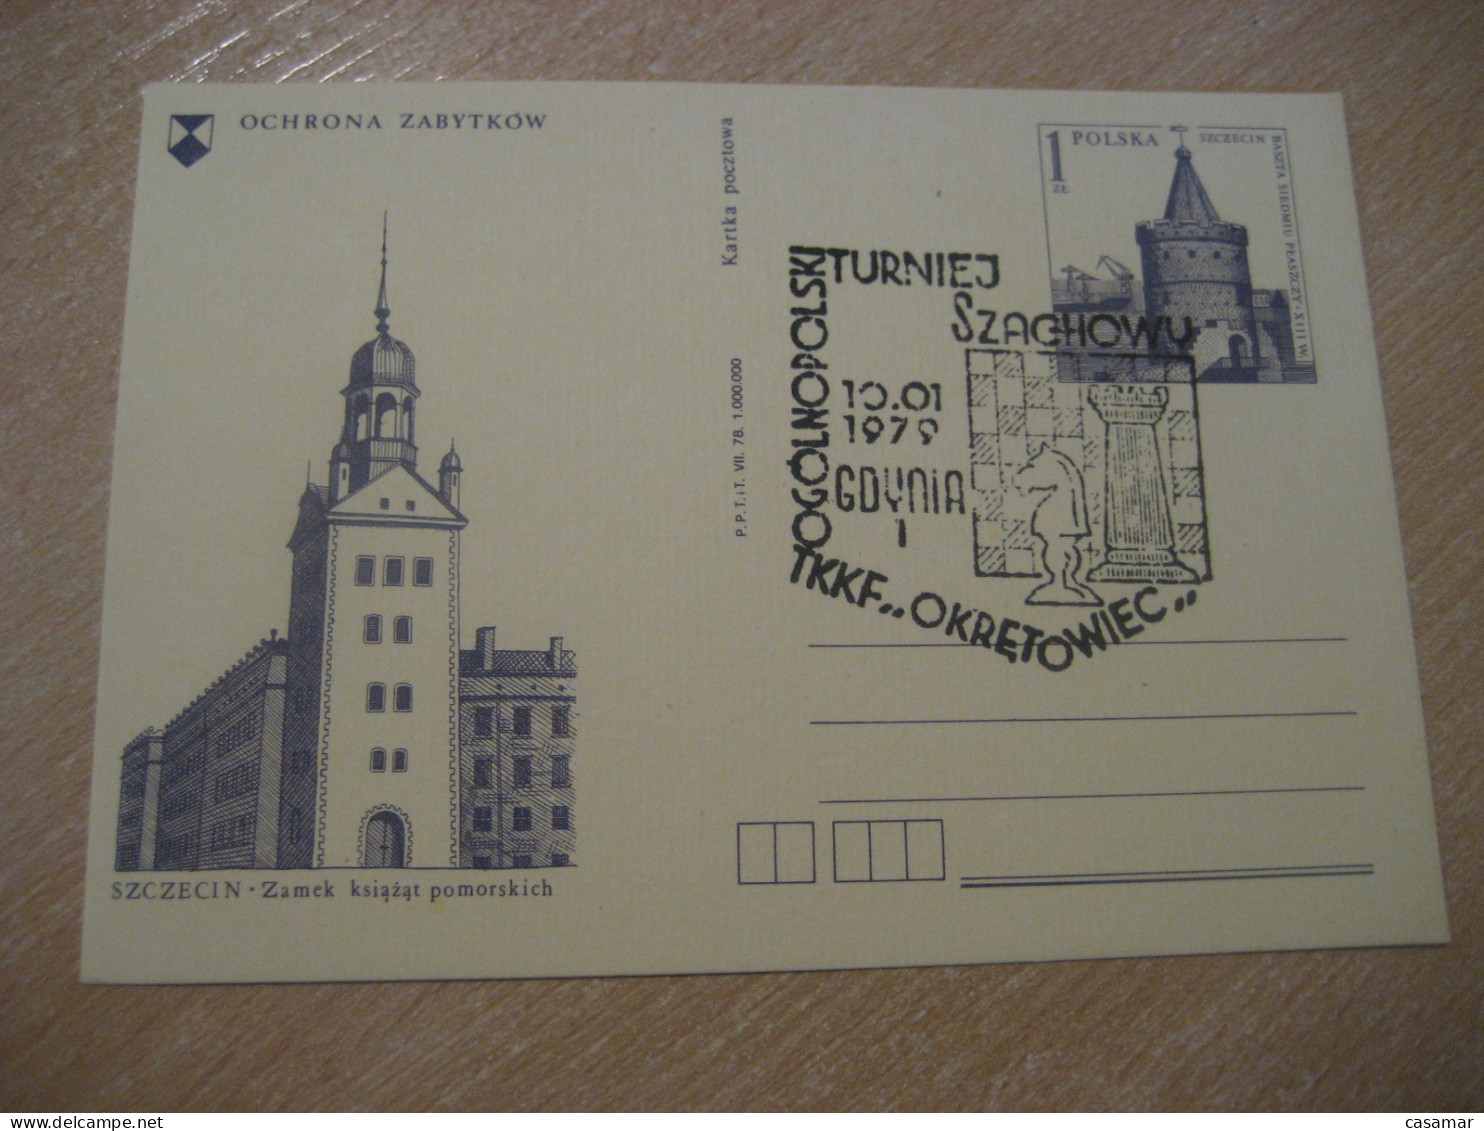 GDYNIA 1979 Chess Echecs Ajedrez Cancel Postal Stationery Card POLAND - Schach